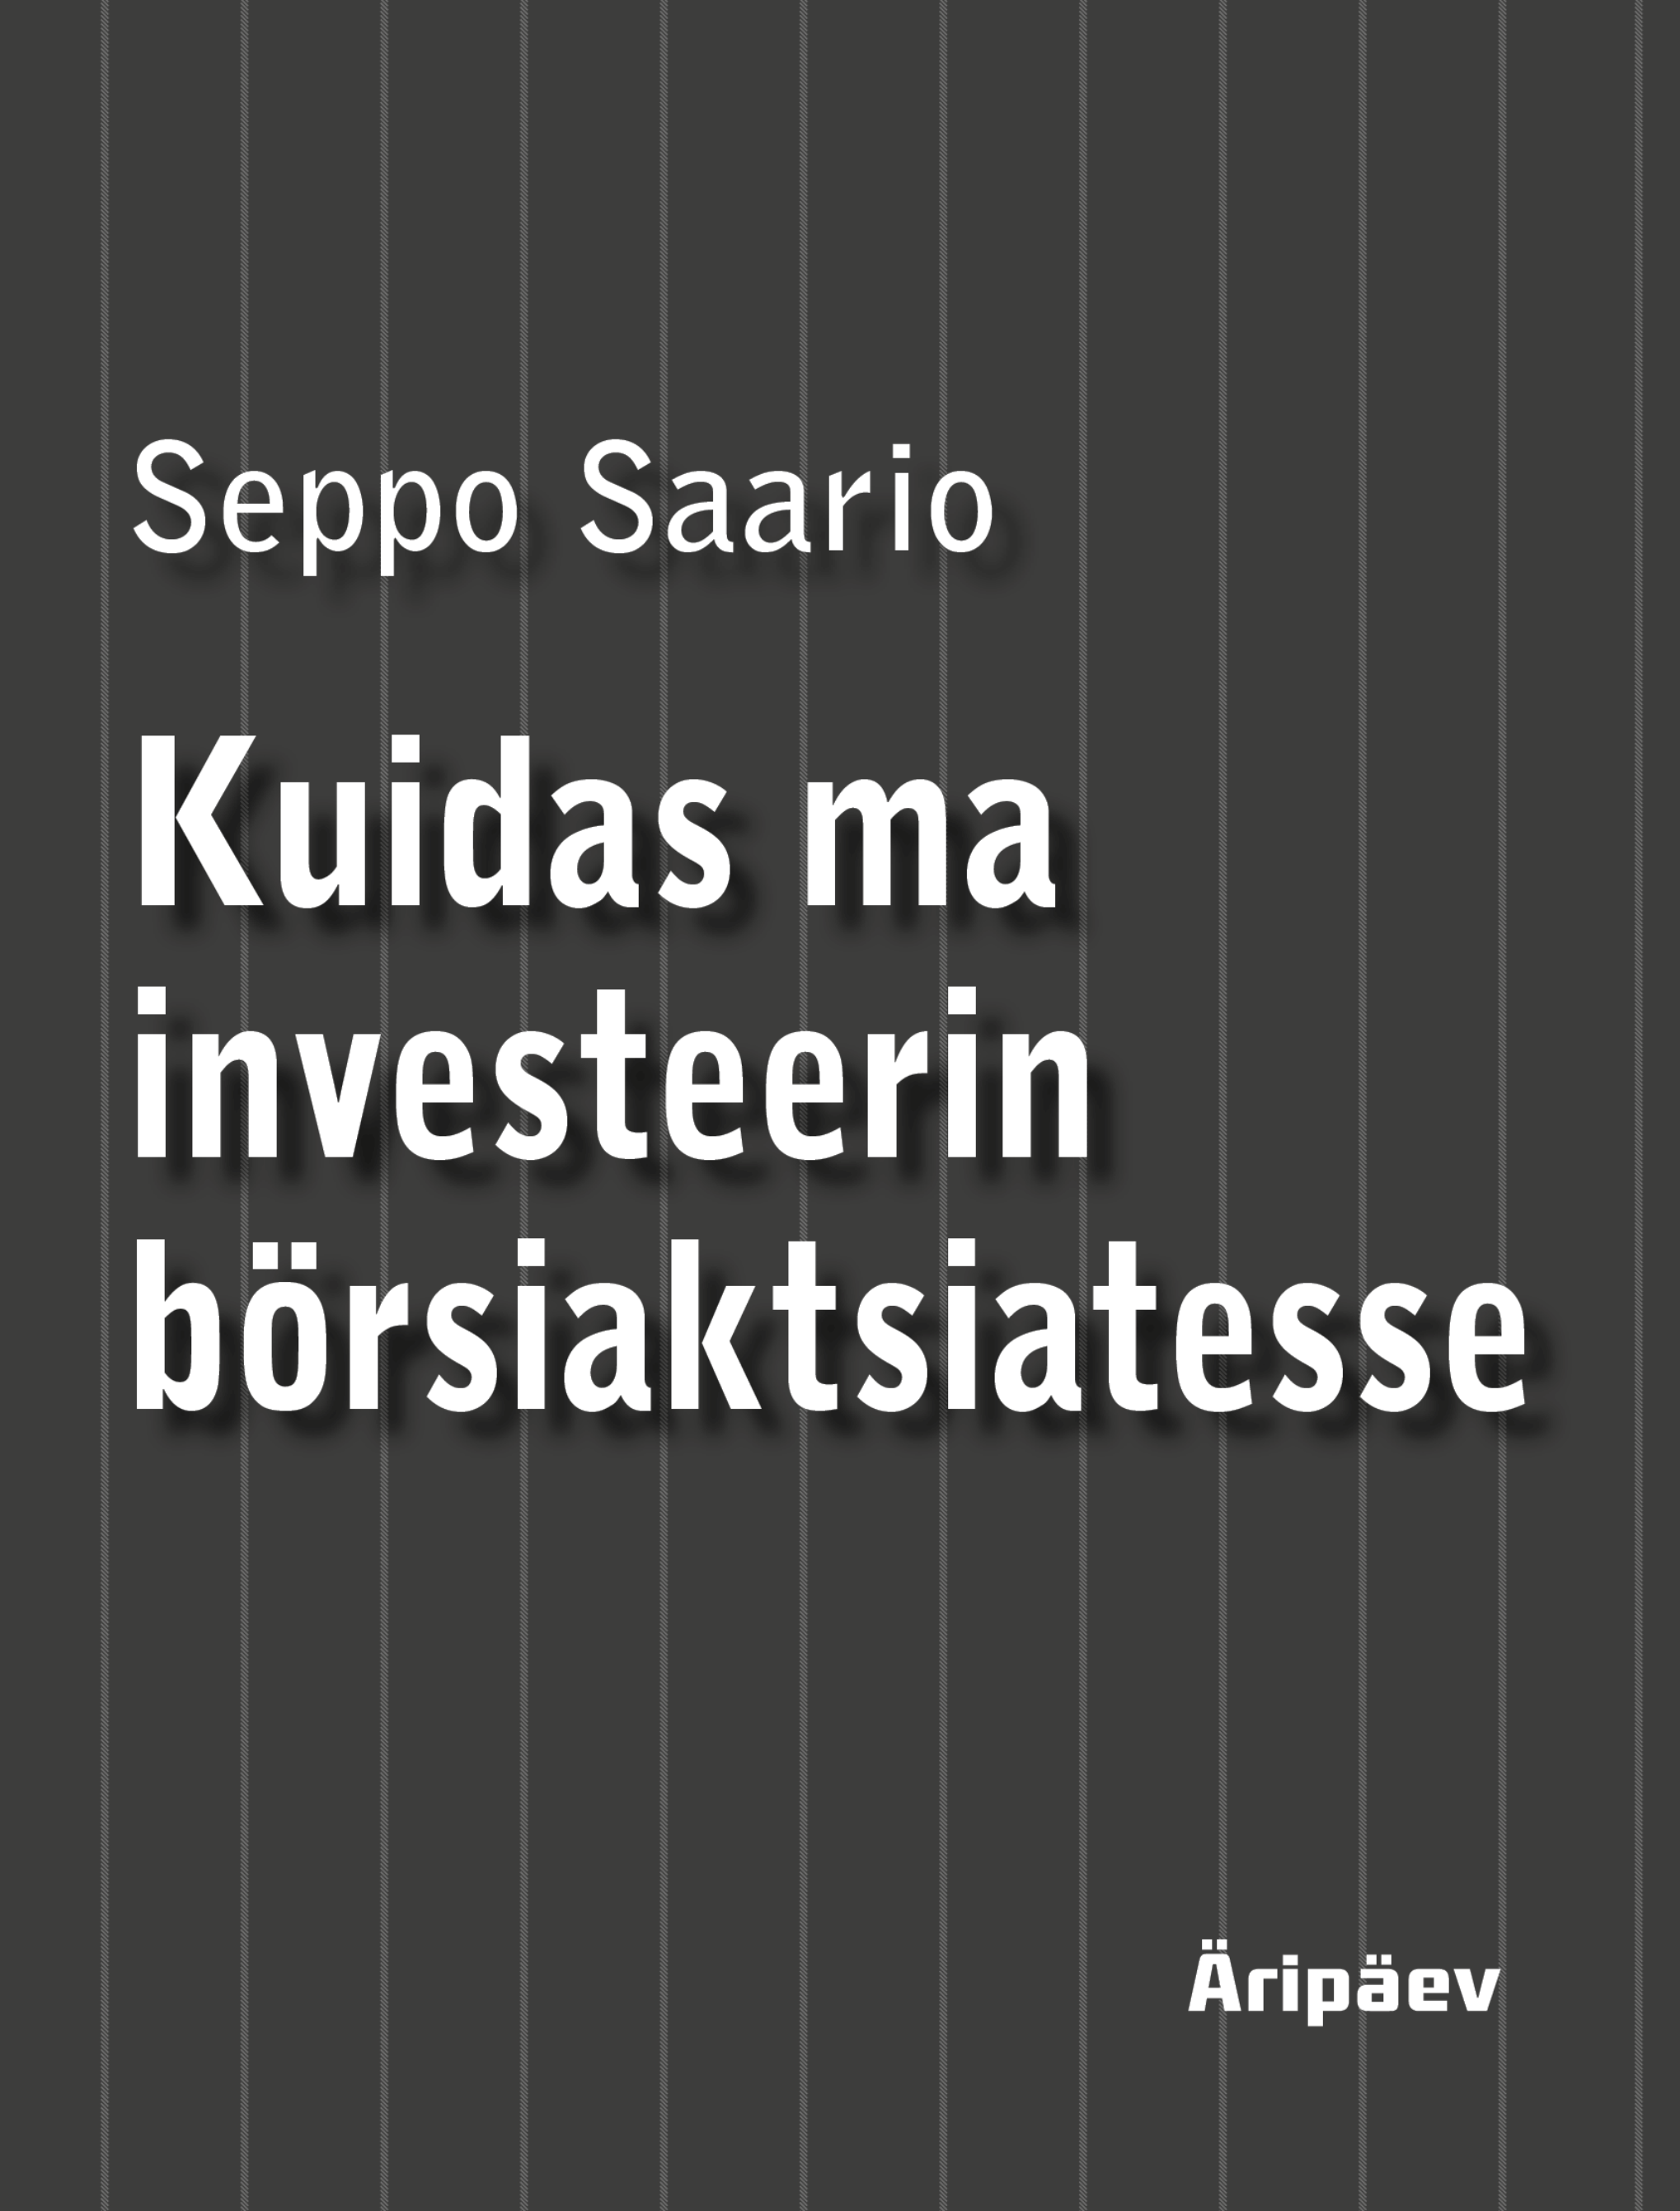 Книга Kuidas ma investeerin börsiaktsiatesse из серии , созданная Seppo Saario, может относится к жанру Экономика. Стоимость электронной книги Kuidas ma investeerin börsiaktsiatesse с идентификатором 50403290 составляет 2172.21 руб.